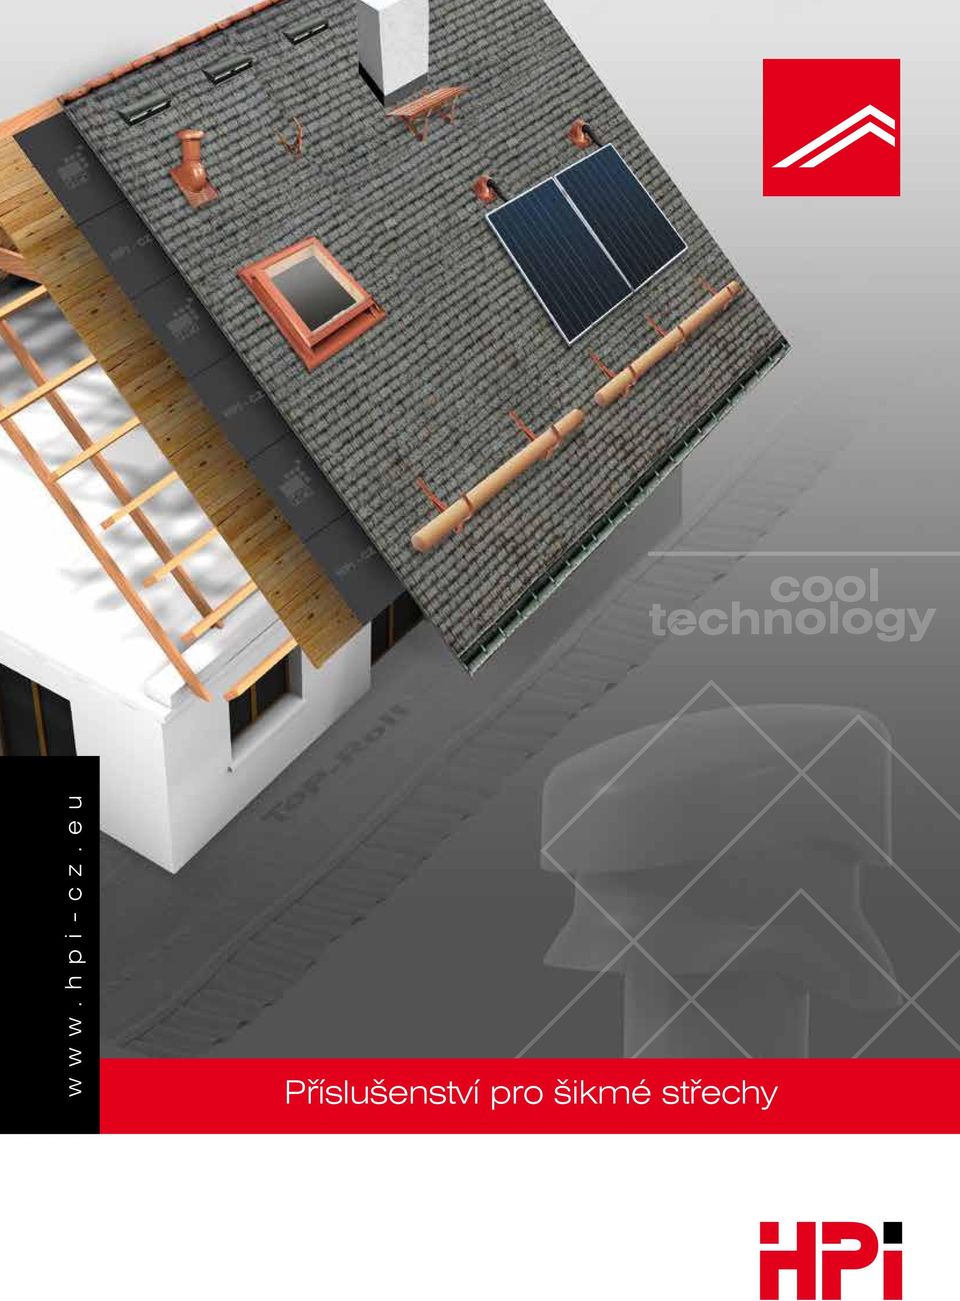 šikmé střechy ploché střechy solární systémy nadkrokevní izolace  zateplovací systémy vnitřní a vnější stavba geosyntetika a hydroizolace -  PDF Stažení zdarma